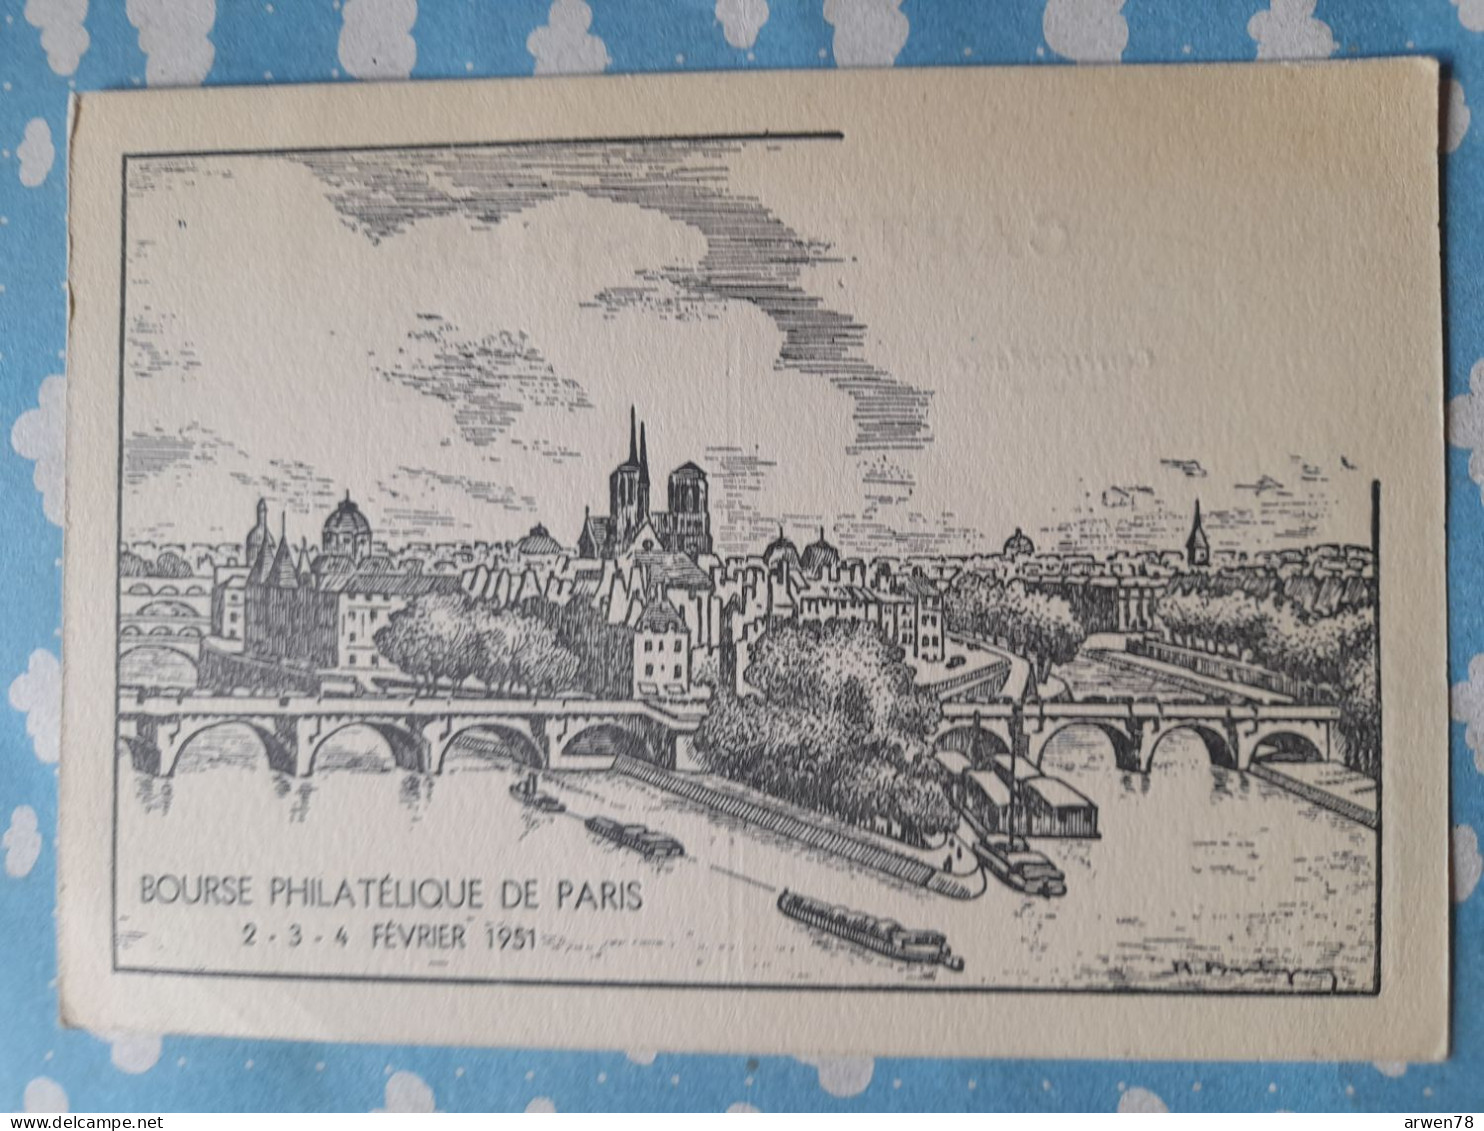 BOURSE PHILATELIQUE DE PARIS 2 . 3 . 4 FEVRIER 1951 - Post